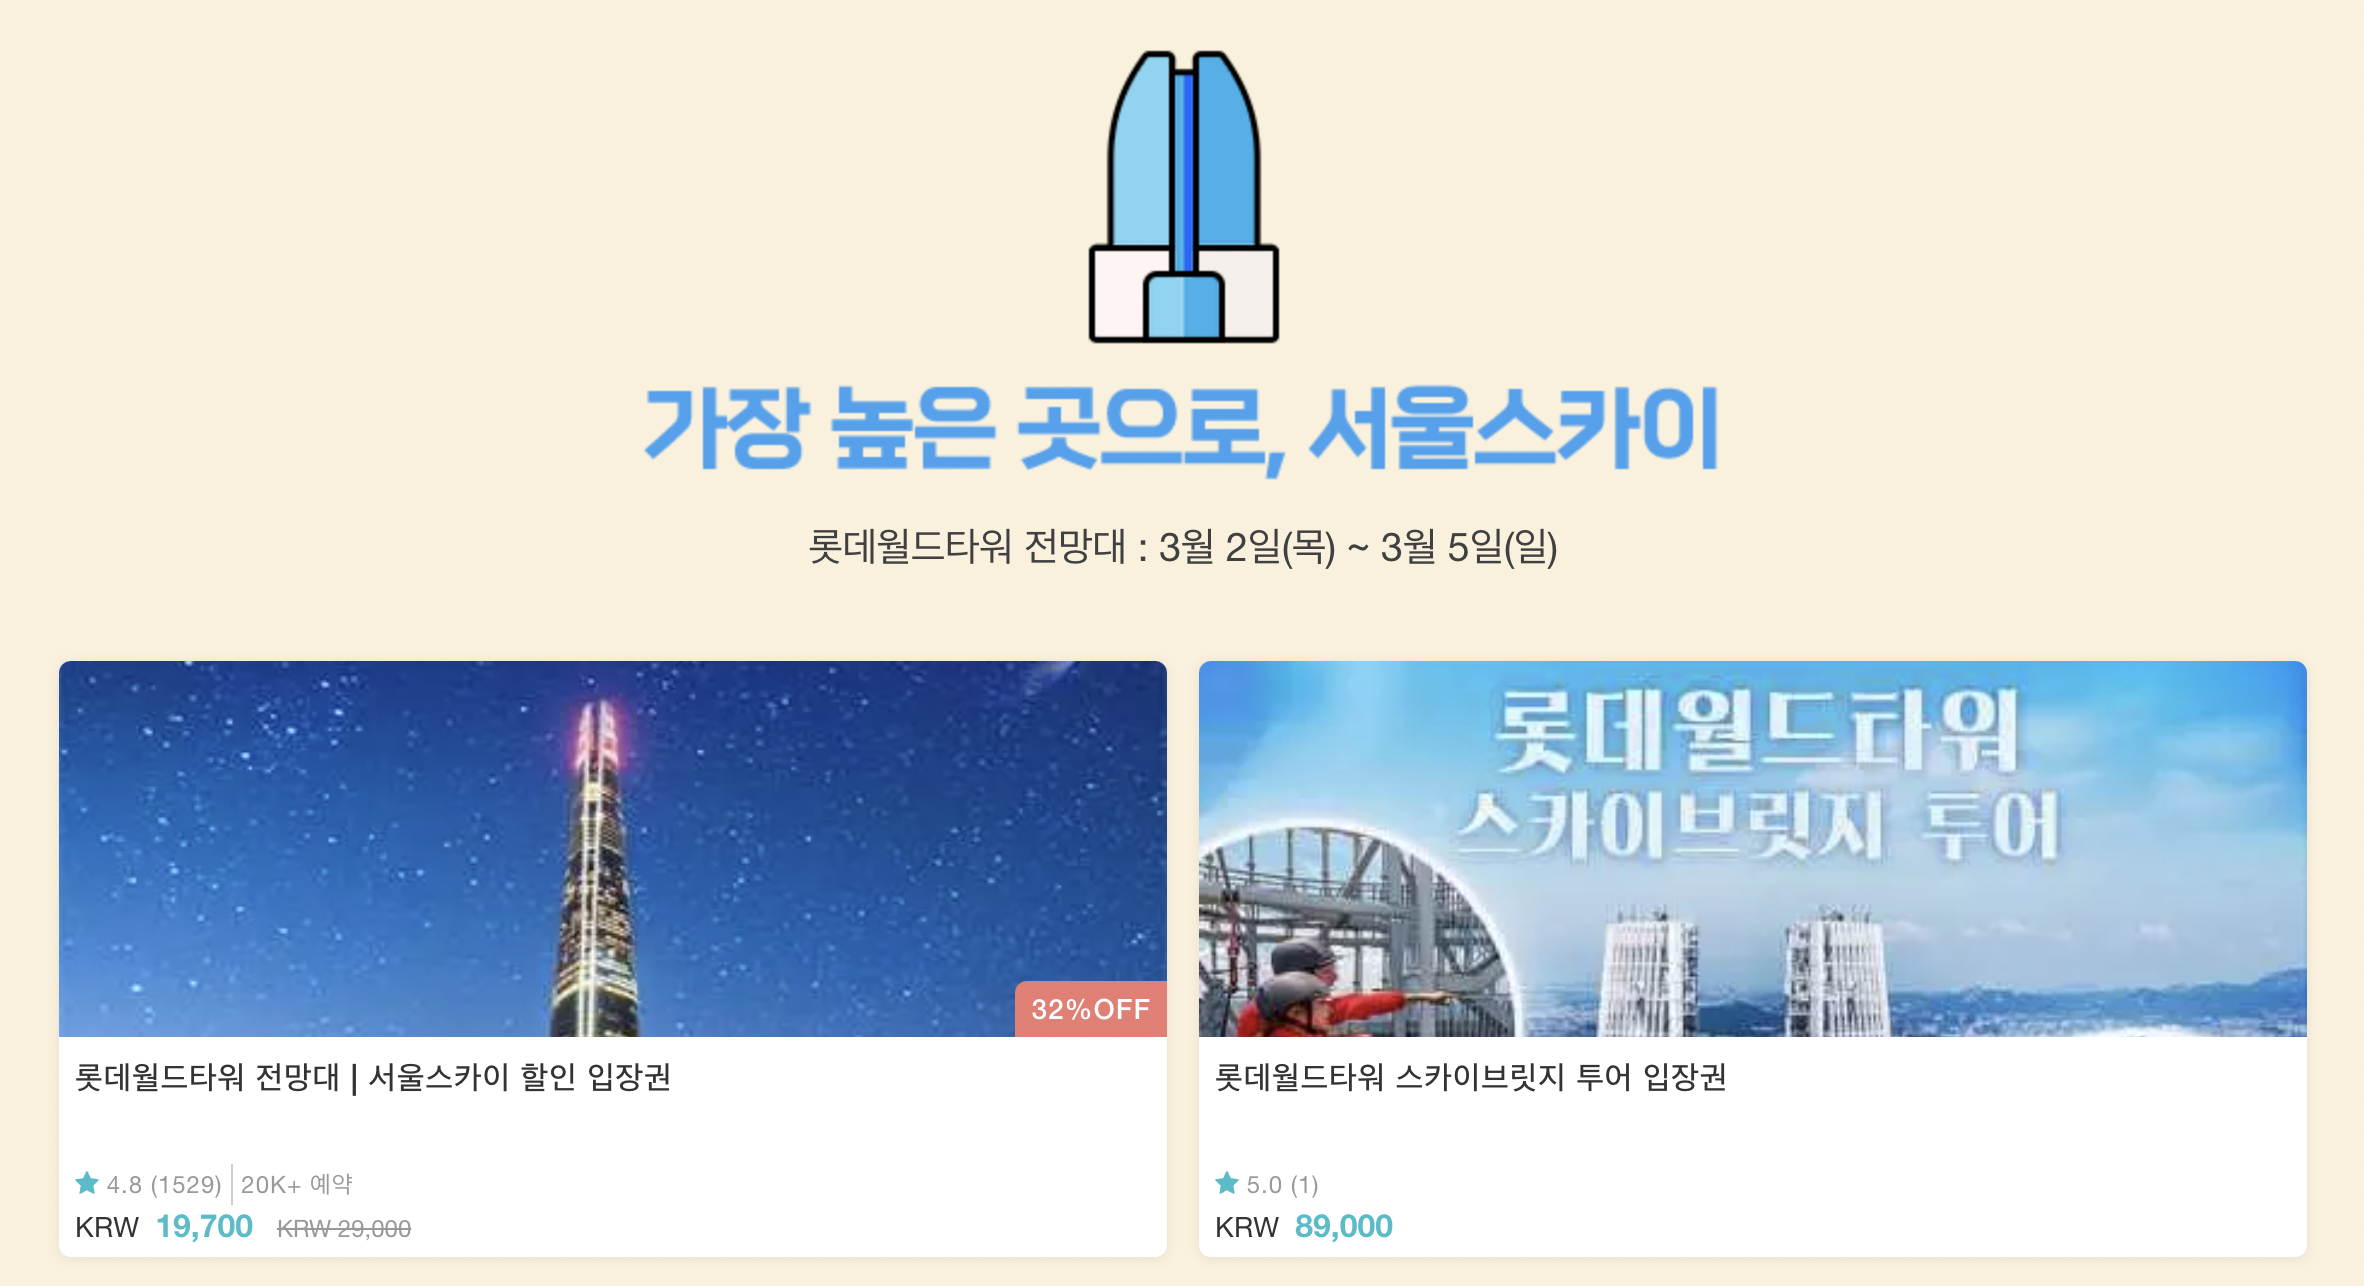 롯데월드 어드밴처 매직패스 23% + 4천원 추가 할인 입장권 구매방법